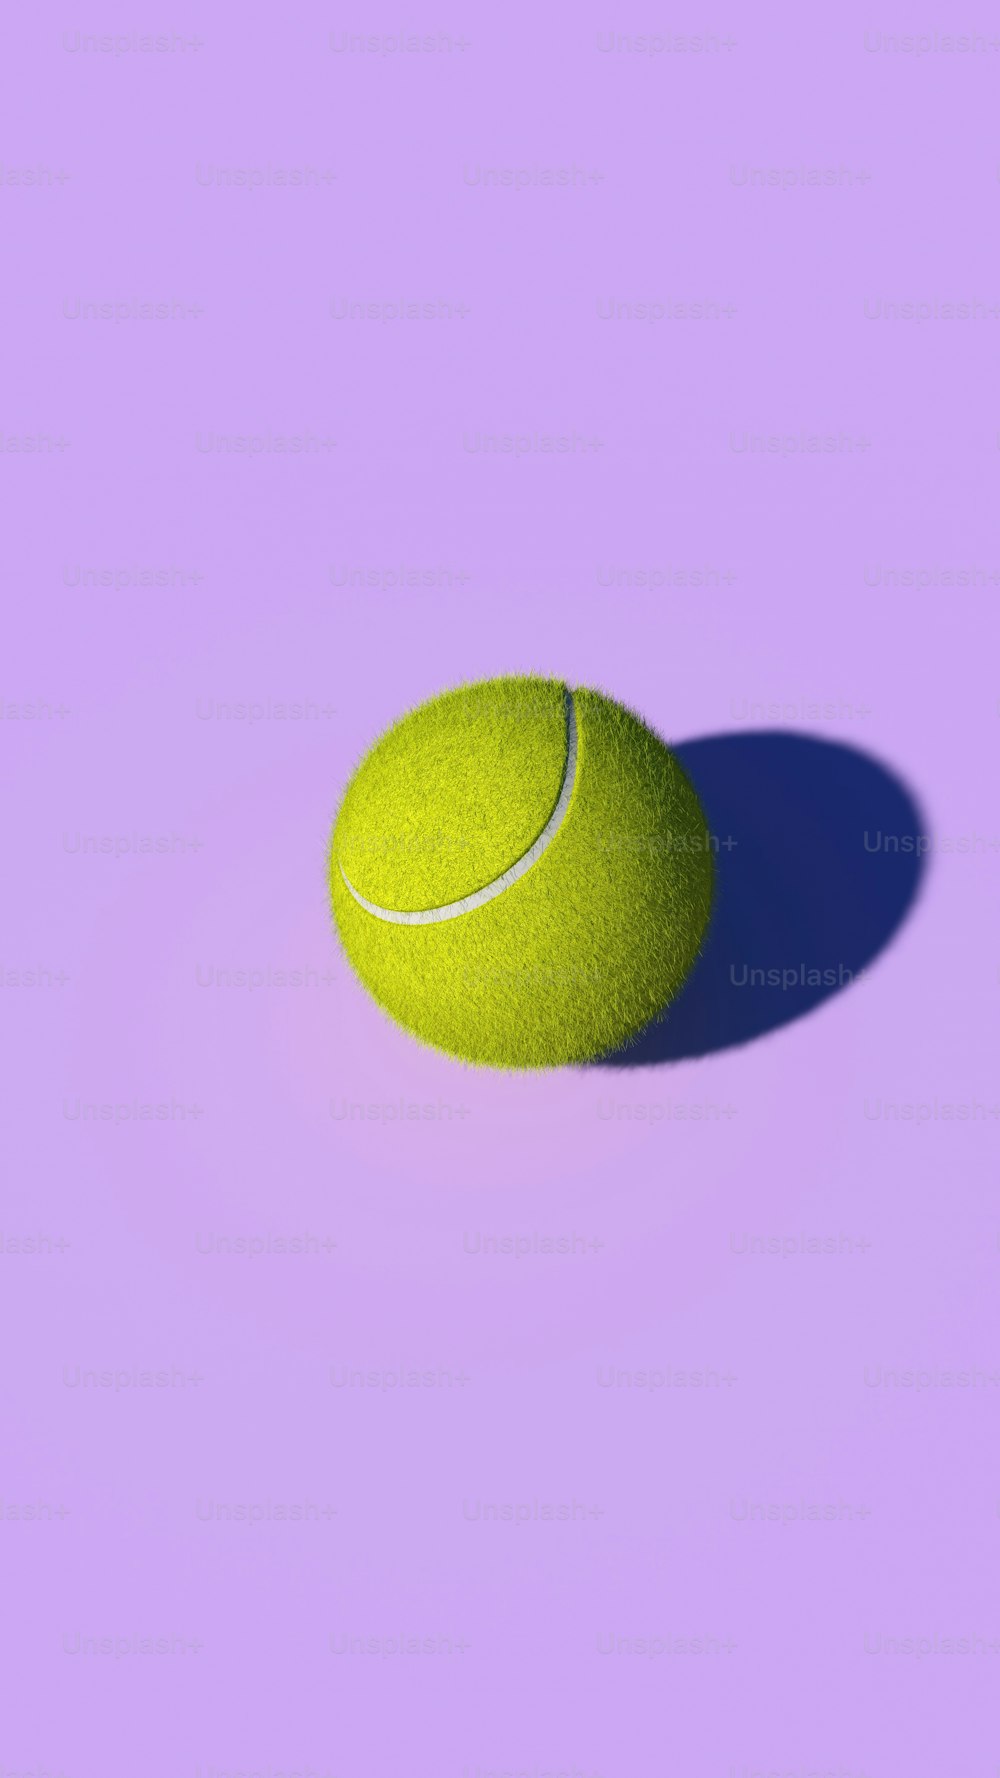 紫色の背景に黄色のテニスボール